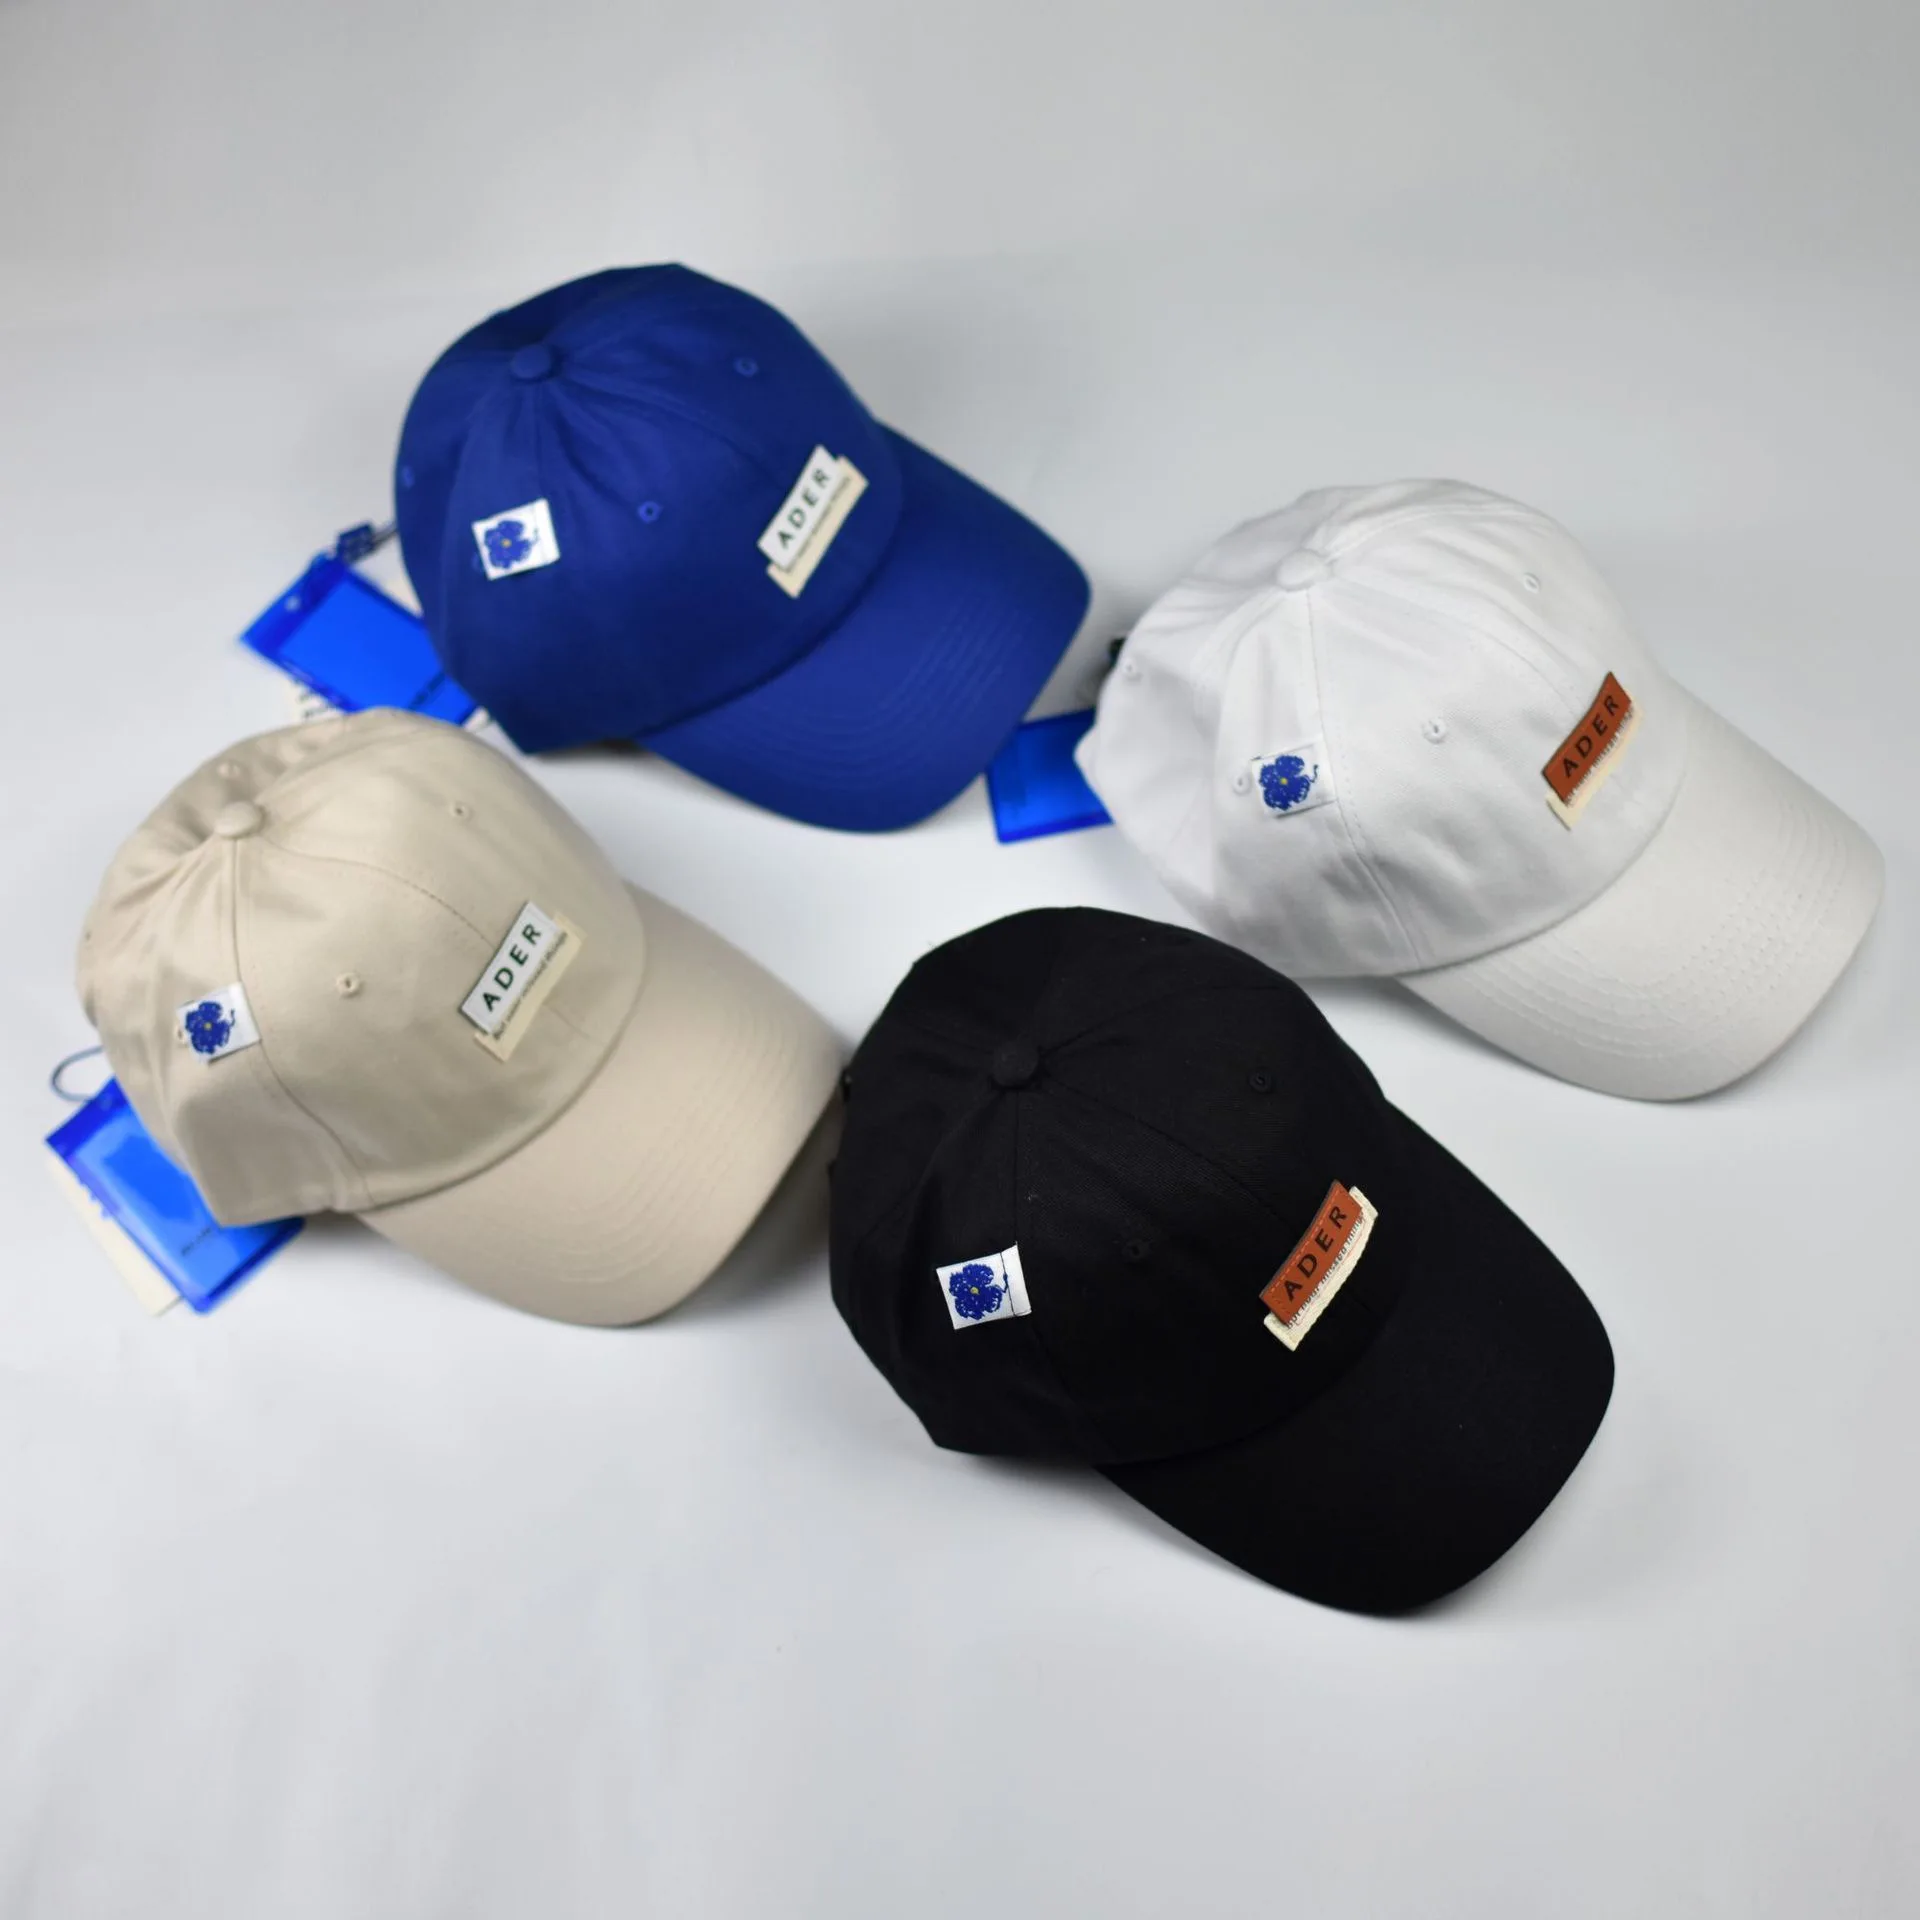 

2022 высококачественные мужские и женские бейсболки Ader с вышивкой логотипа кепки Ader многоцветные на выбор и регулируемые